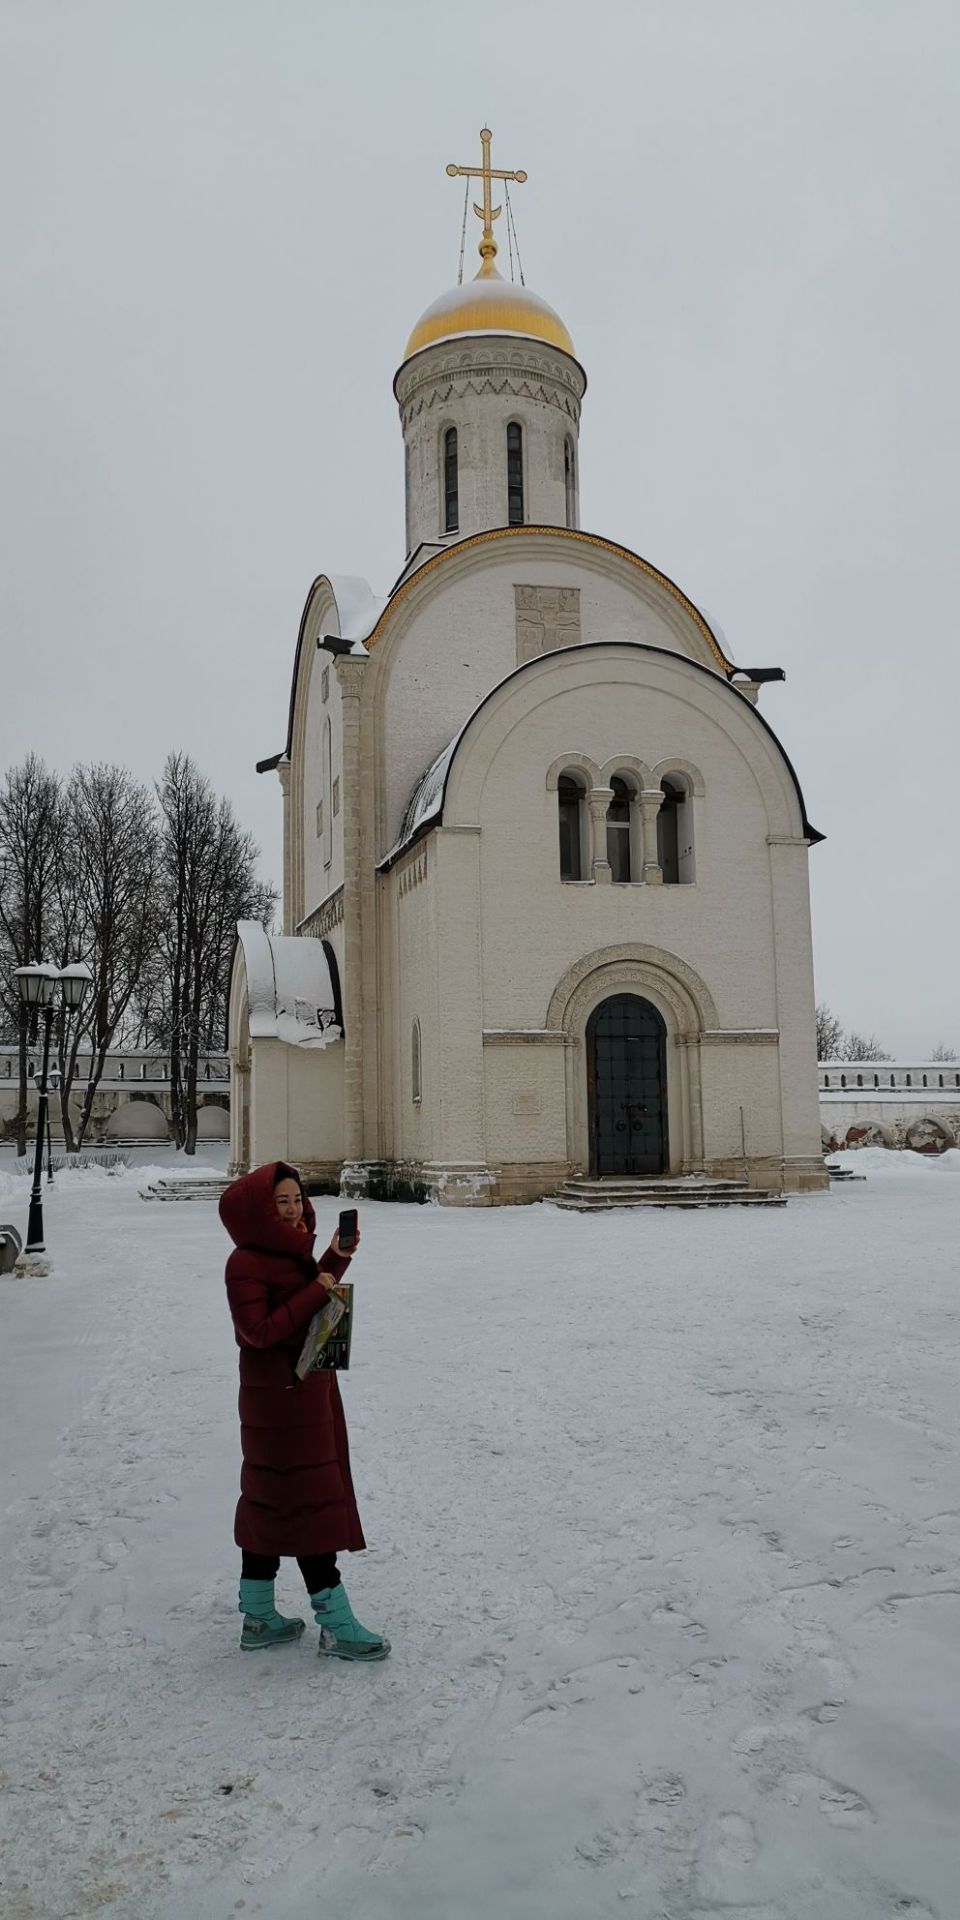 世界闻名的旅游线路“俄罗斯金环”从弗拉基米尔州境内穿过。白石建筑金门、圣母安息大教堂、德米特里耶夫教